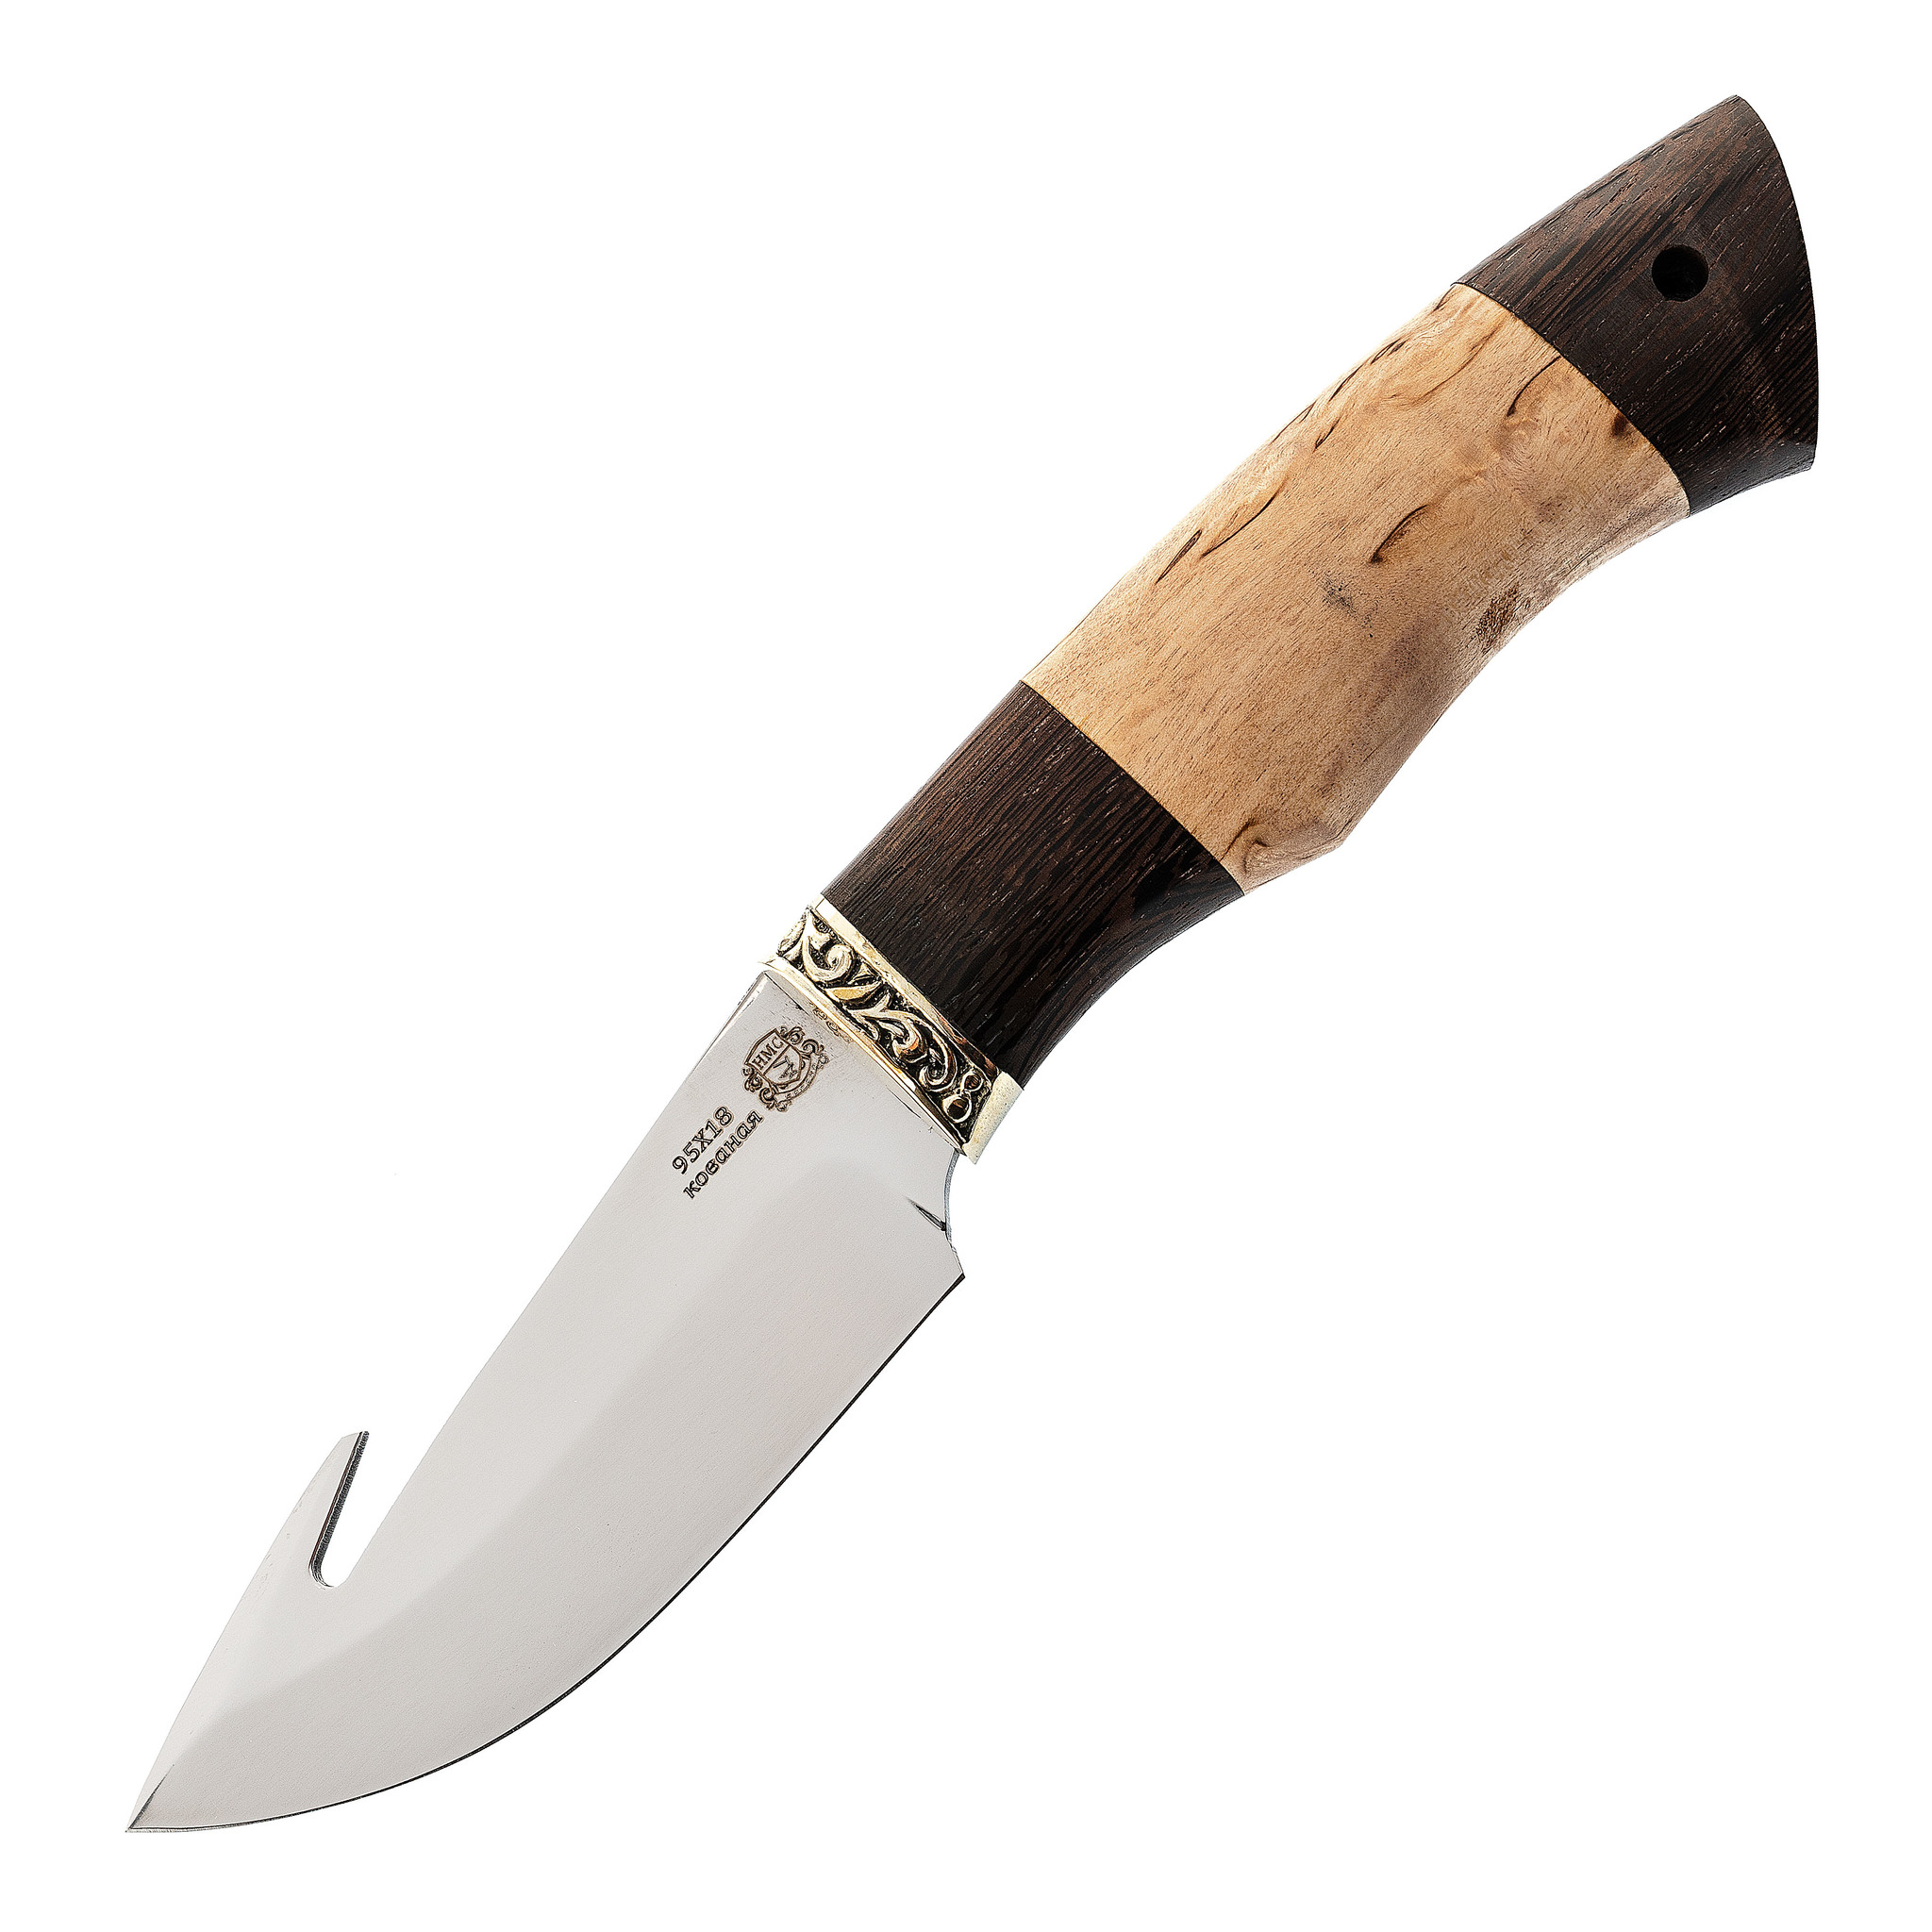 Нож Шкуросъемный с крюком, сталь 95Х18, рукоять карельская береза/венге